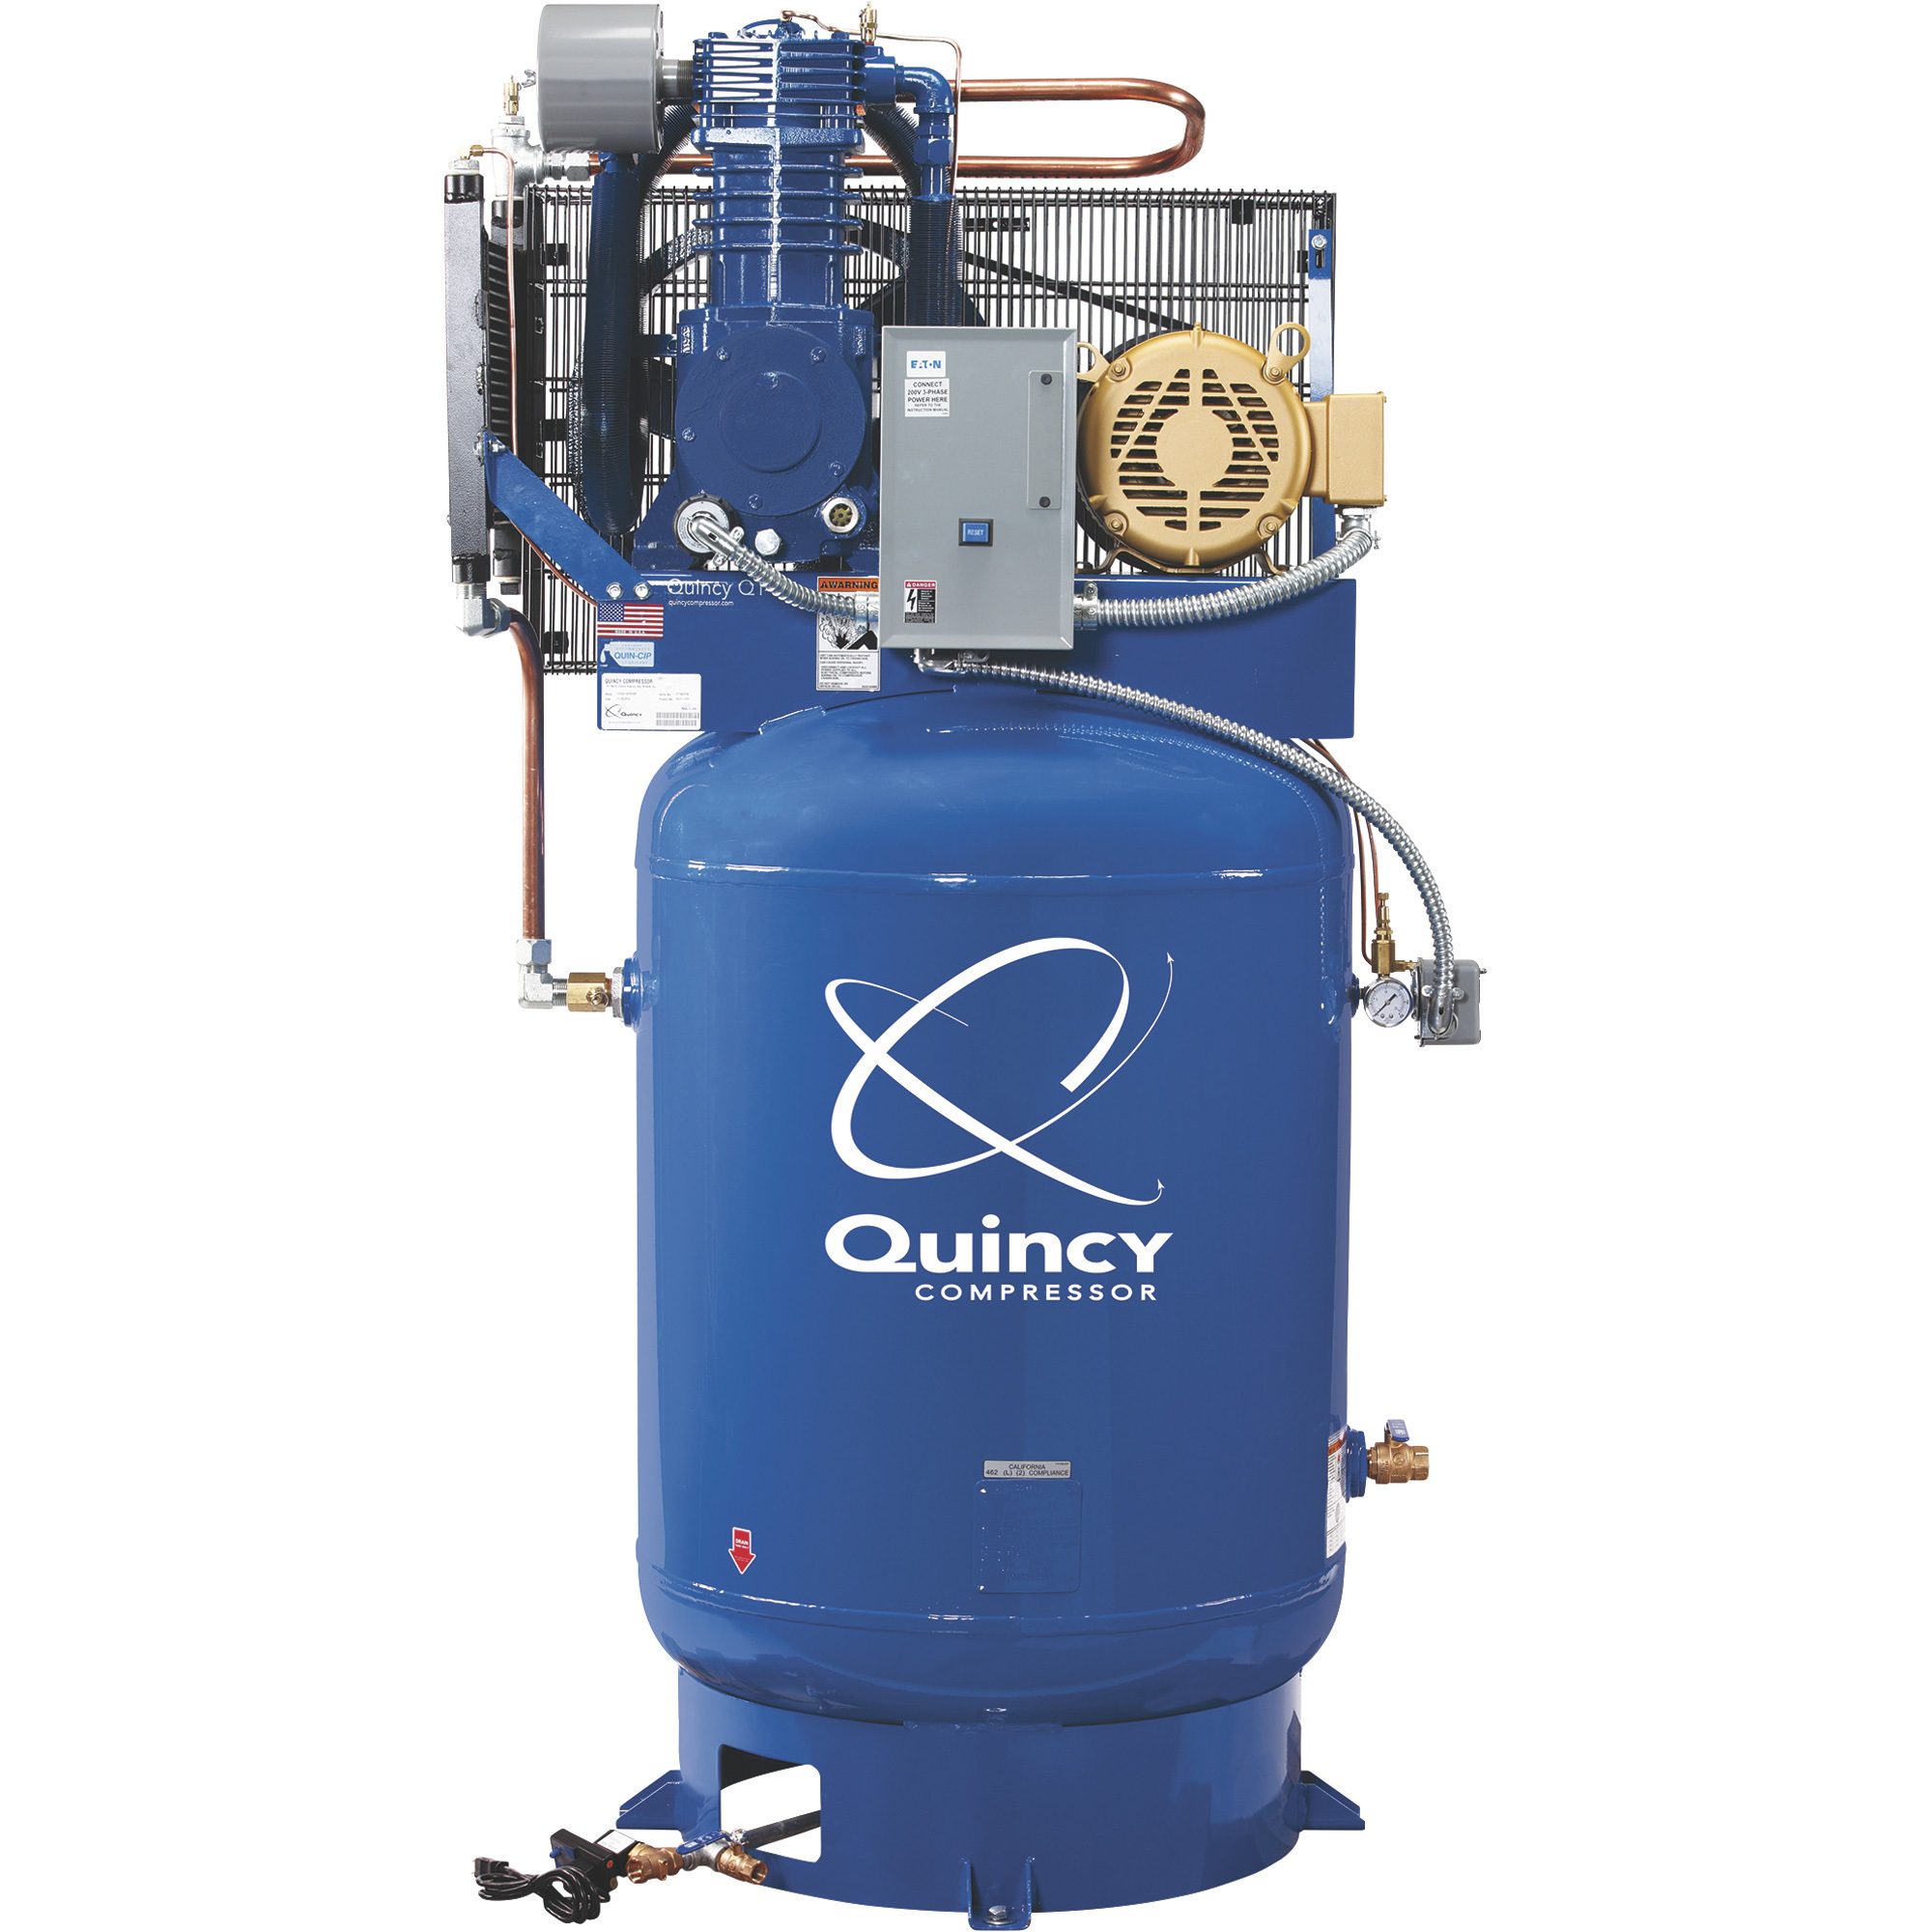 Quincy Compressor 2020014205